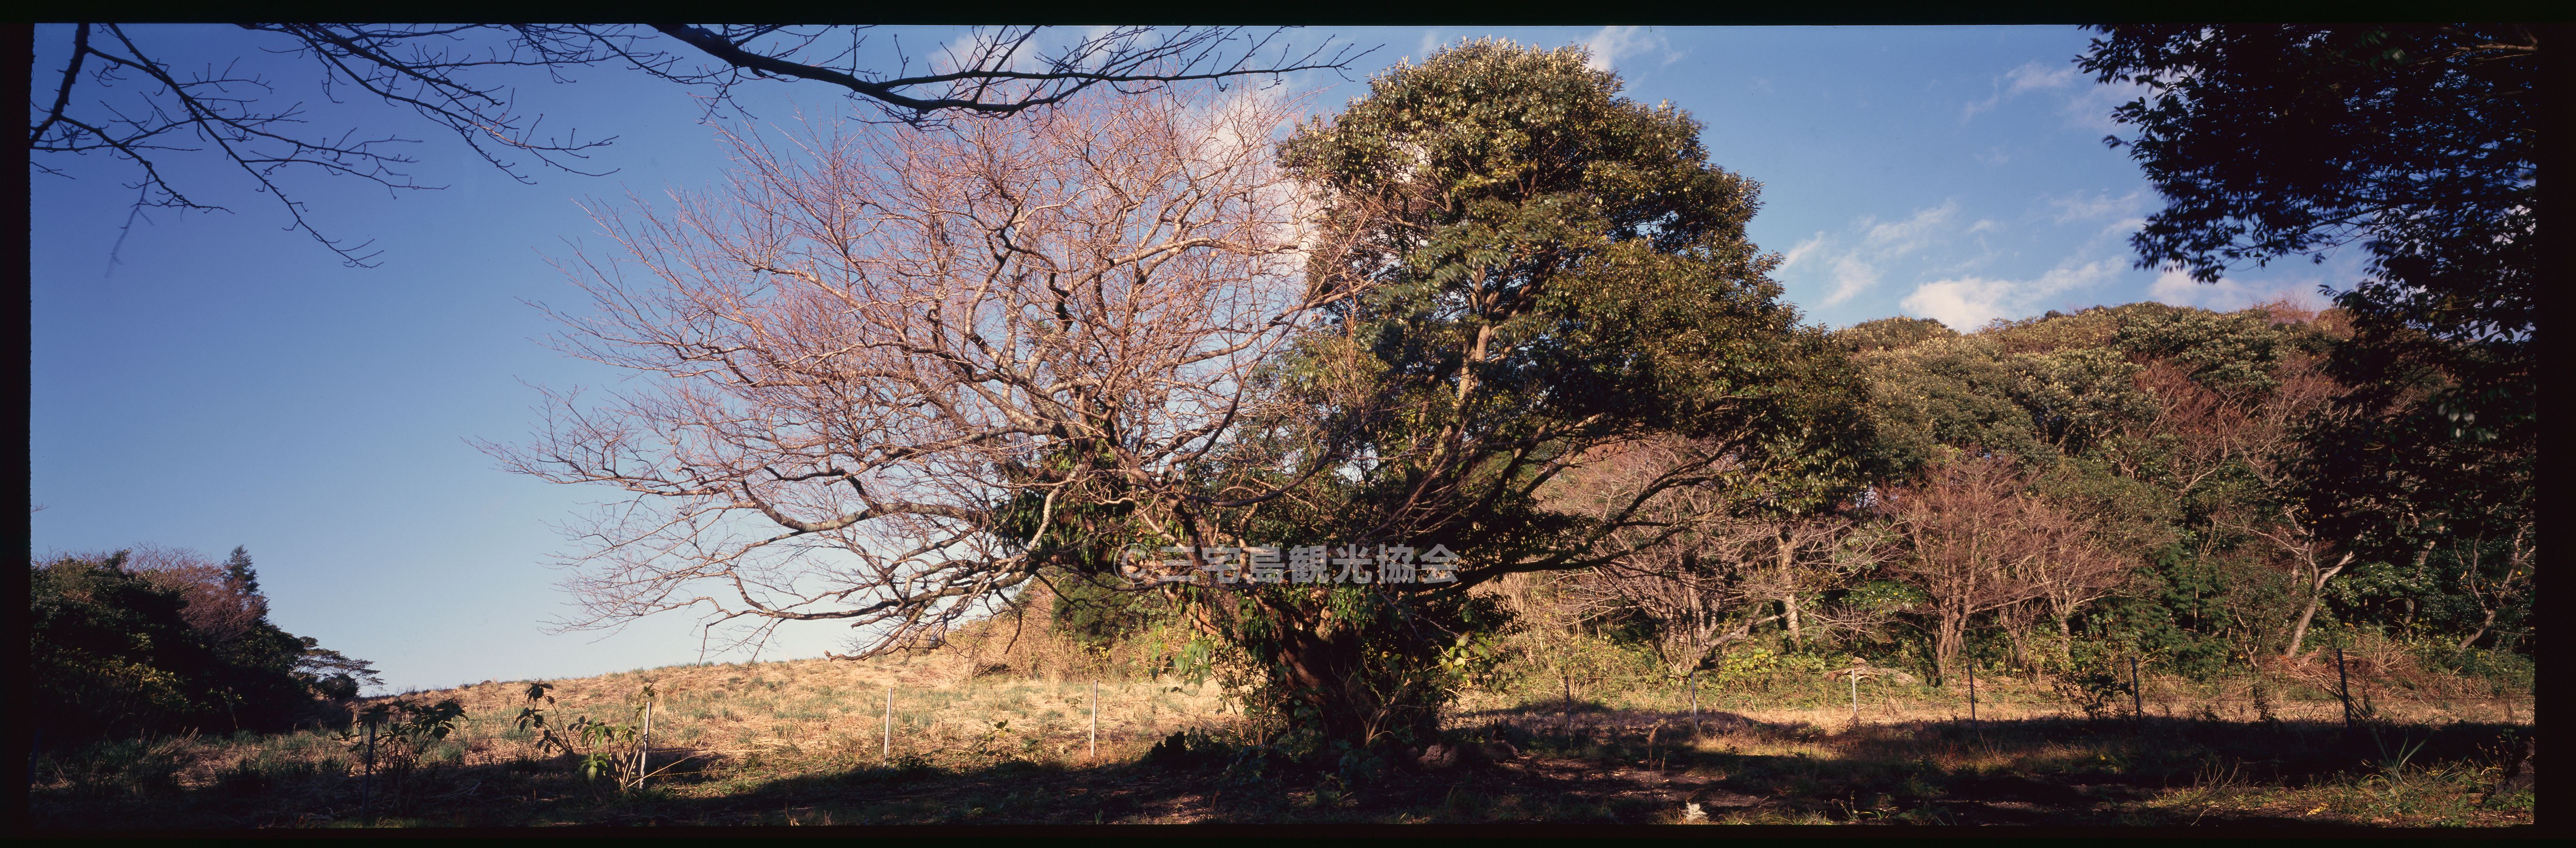 【パノラマ】 共生の樹